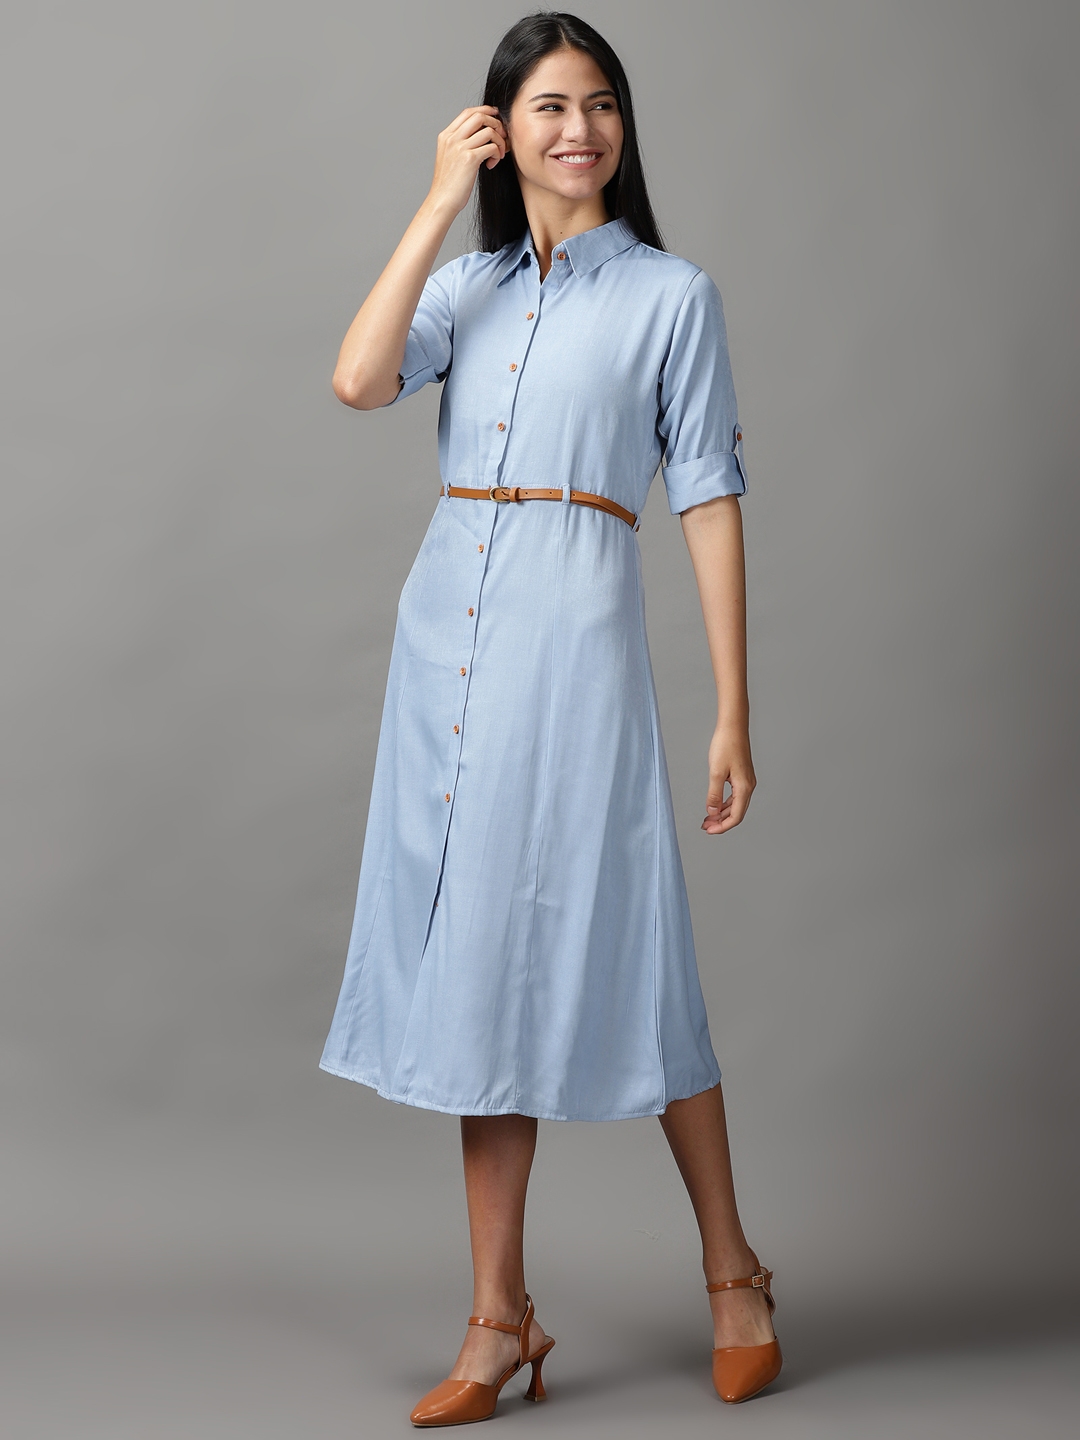 Women's Blue Cotton Solid Dresses